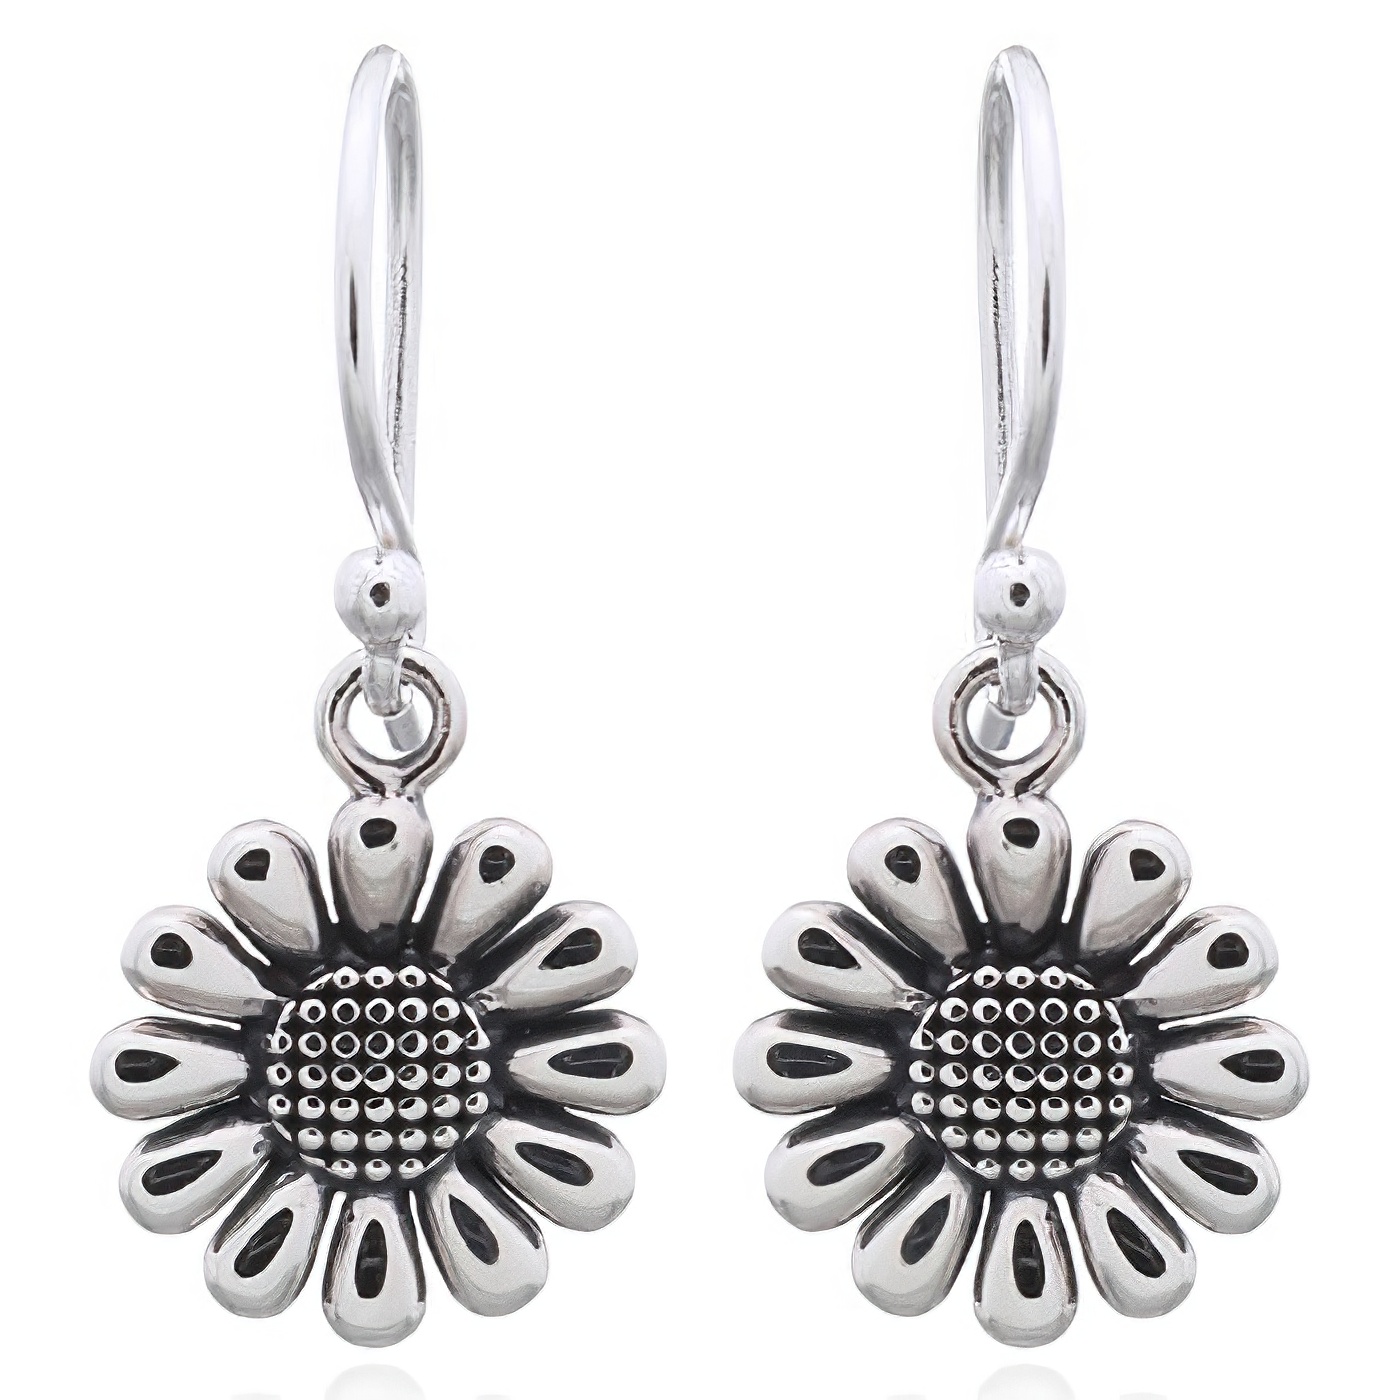 Minimalist Detailed Daisy Flower Dangle Earrings 925 Silver by BeYindi 